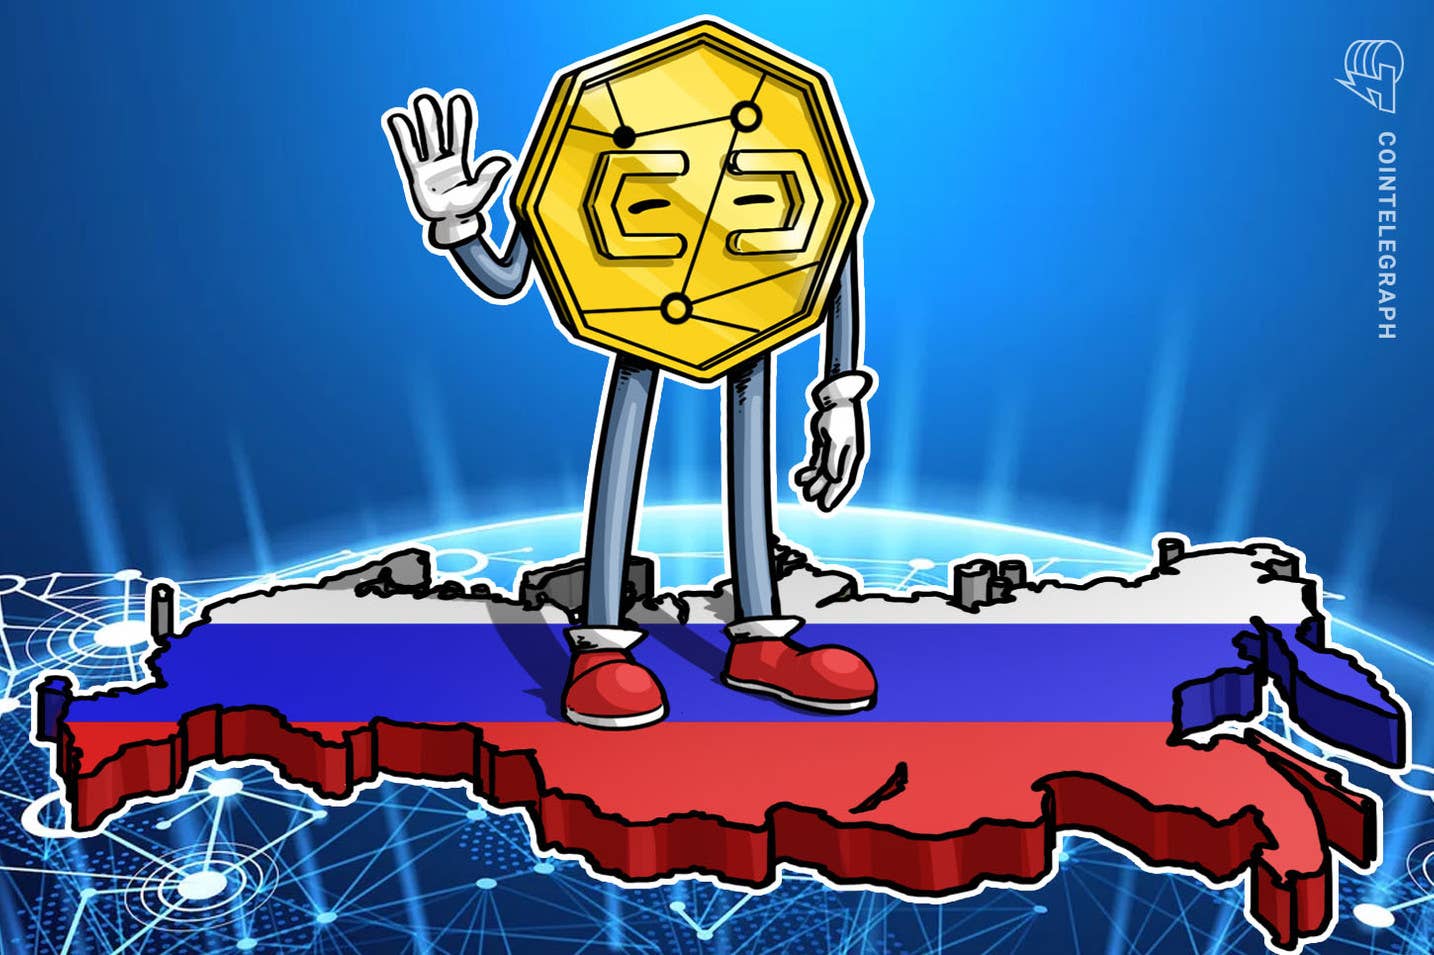 بانک مرکزی روسیه به بانک‌های این کشور دستور داد تراکنش‌های مرتبط با صرافی‌های ارز دیجیتال را مسدود کنند